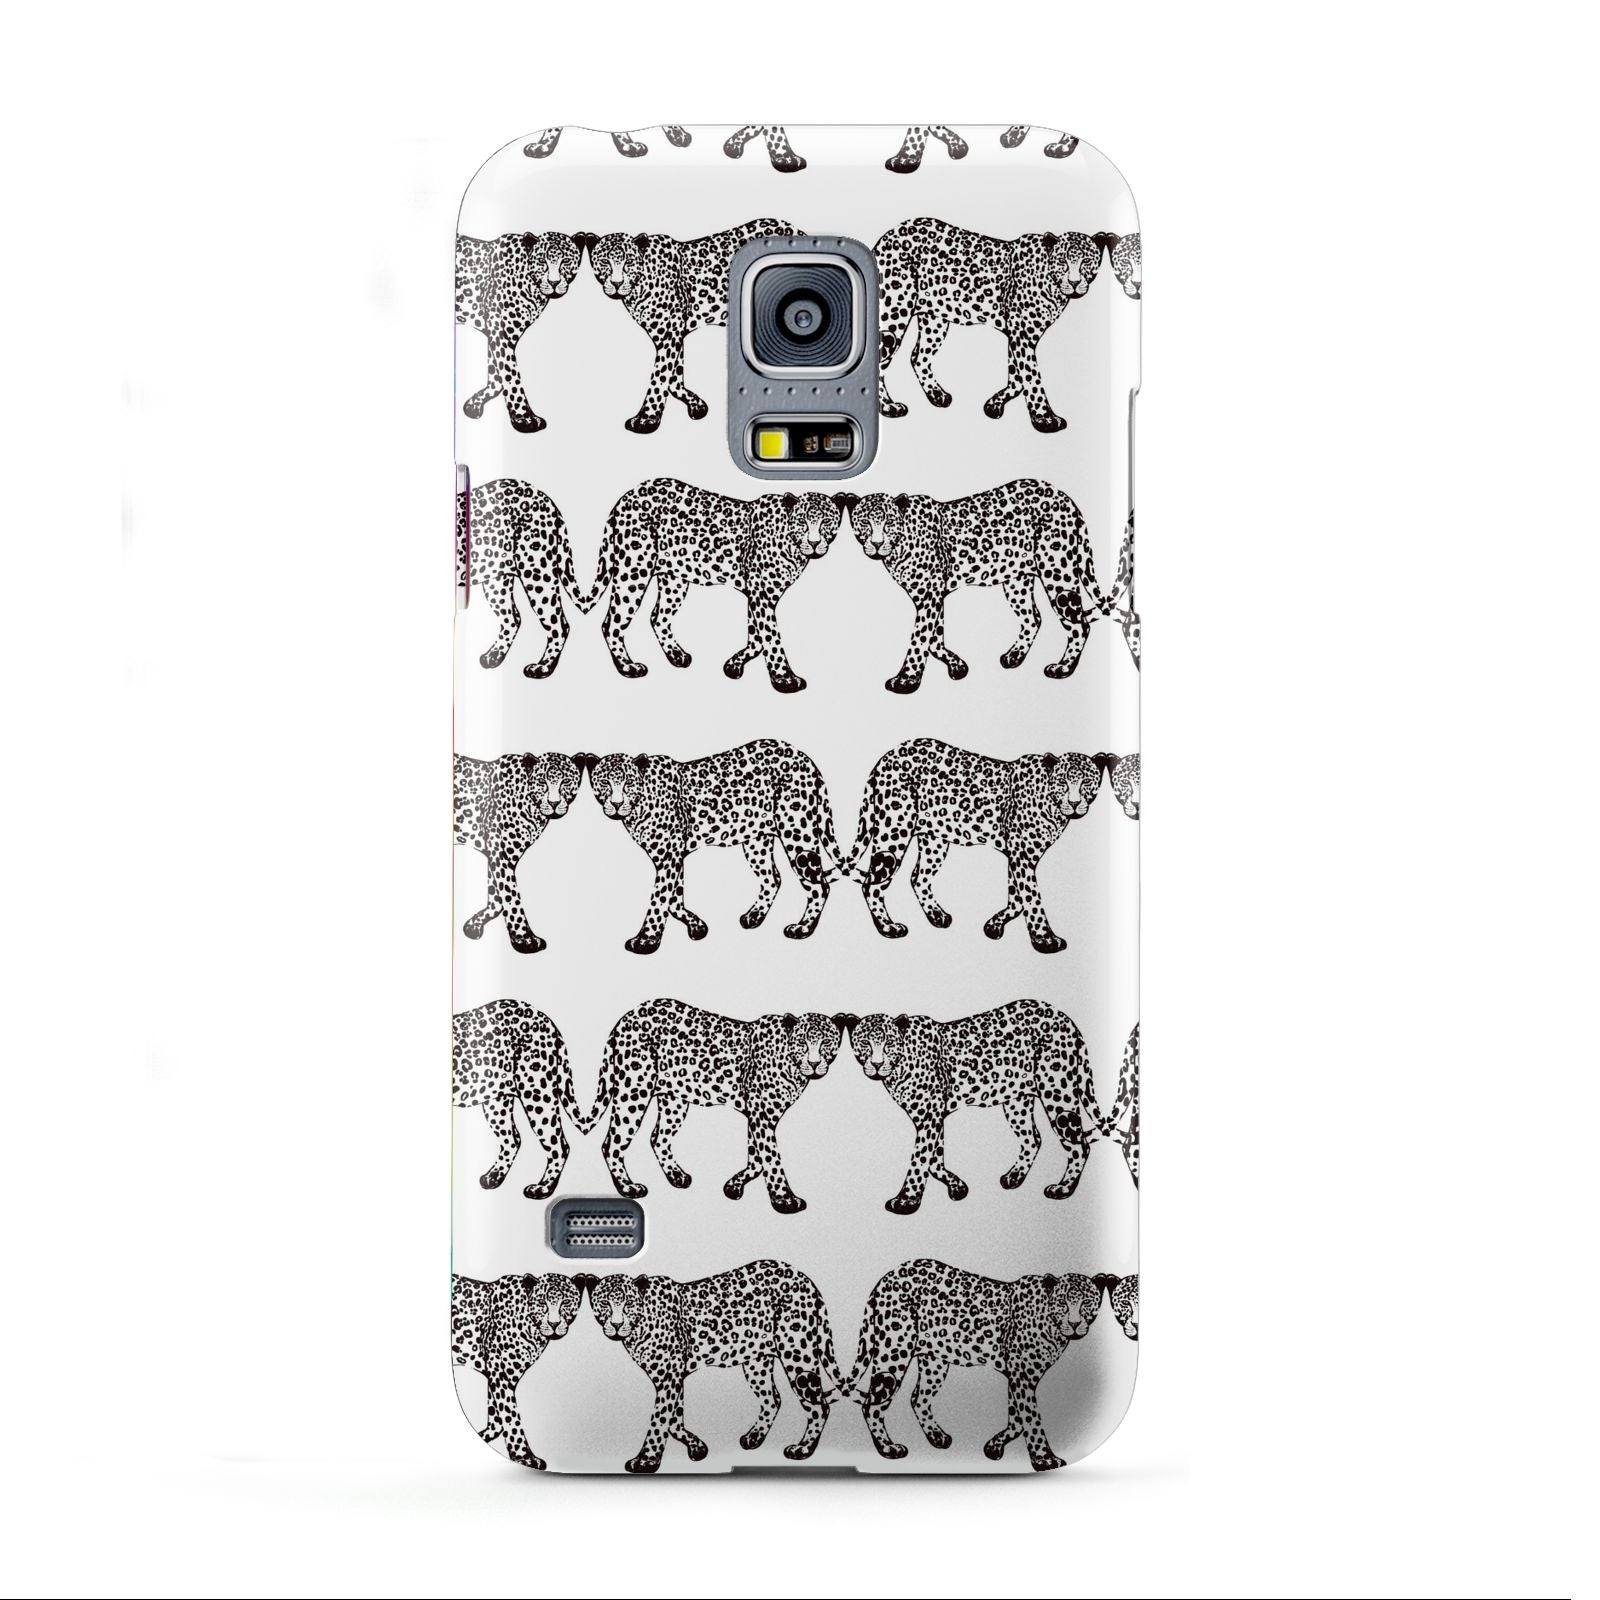 Monochrome Mirrored Leopard Print Samsung Galaxy S5 Mini Case